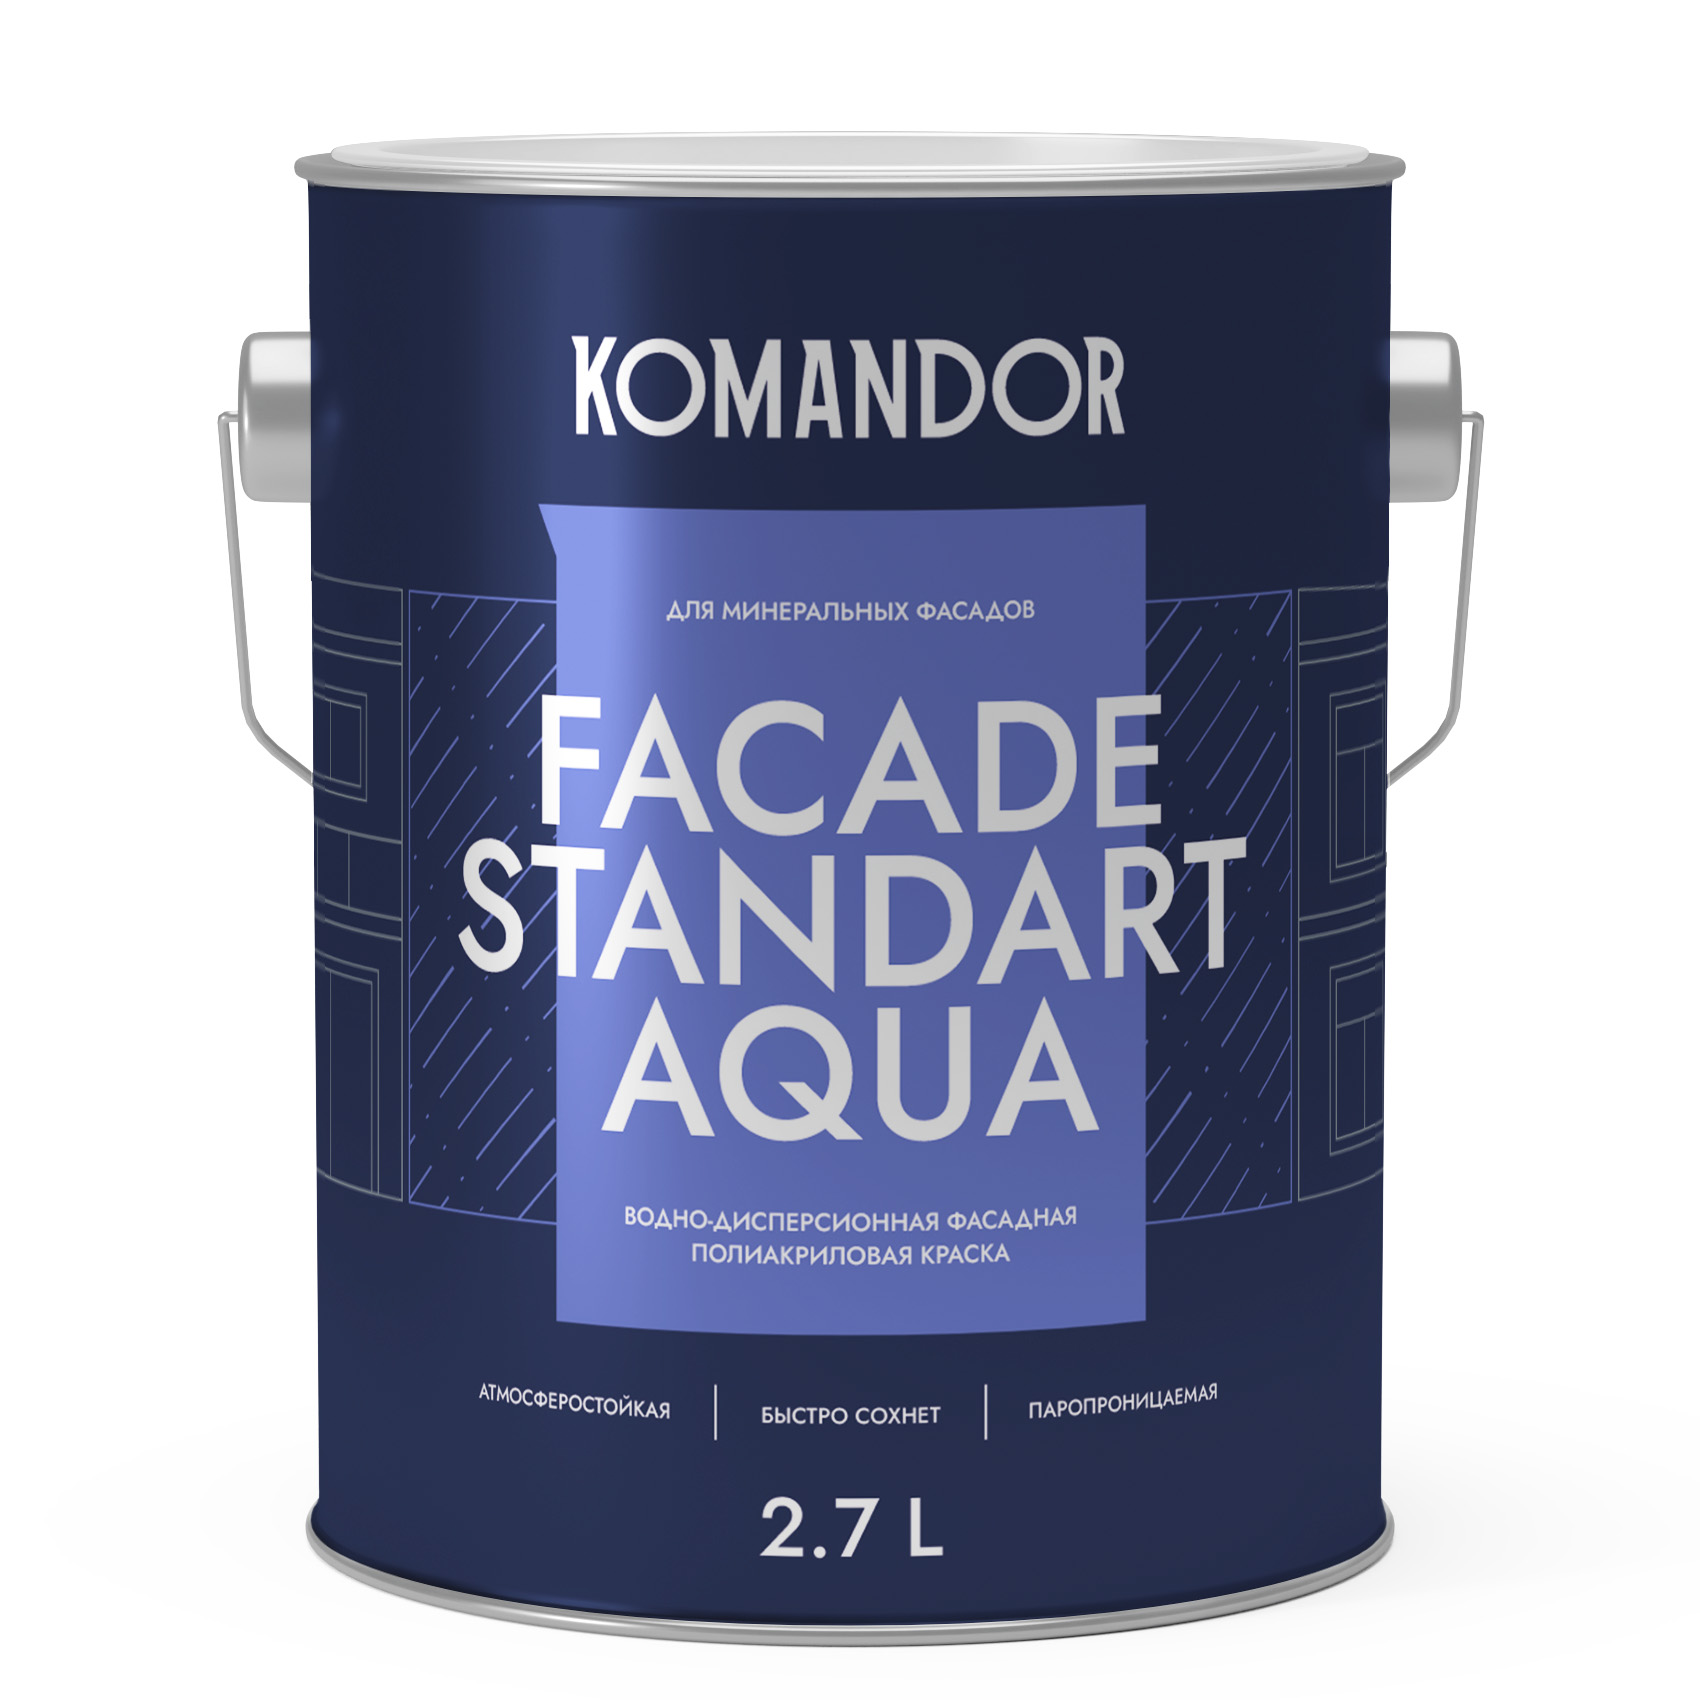 Краска для фасадов Komandor Facade Standart Aqua A S1308001003 глубокоматовая 2,7 л - фото 1